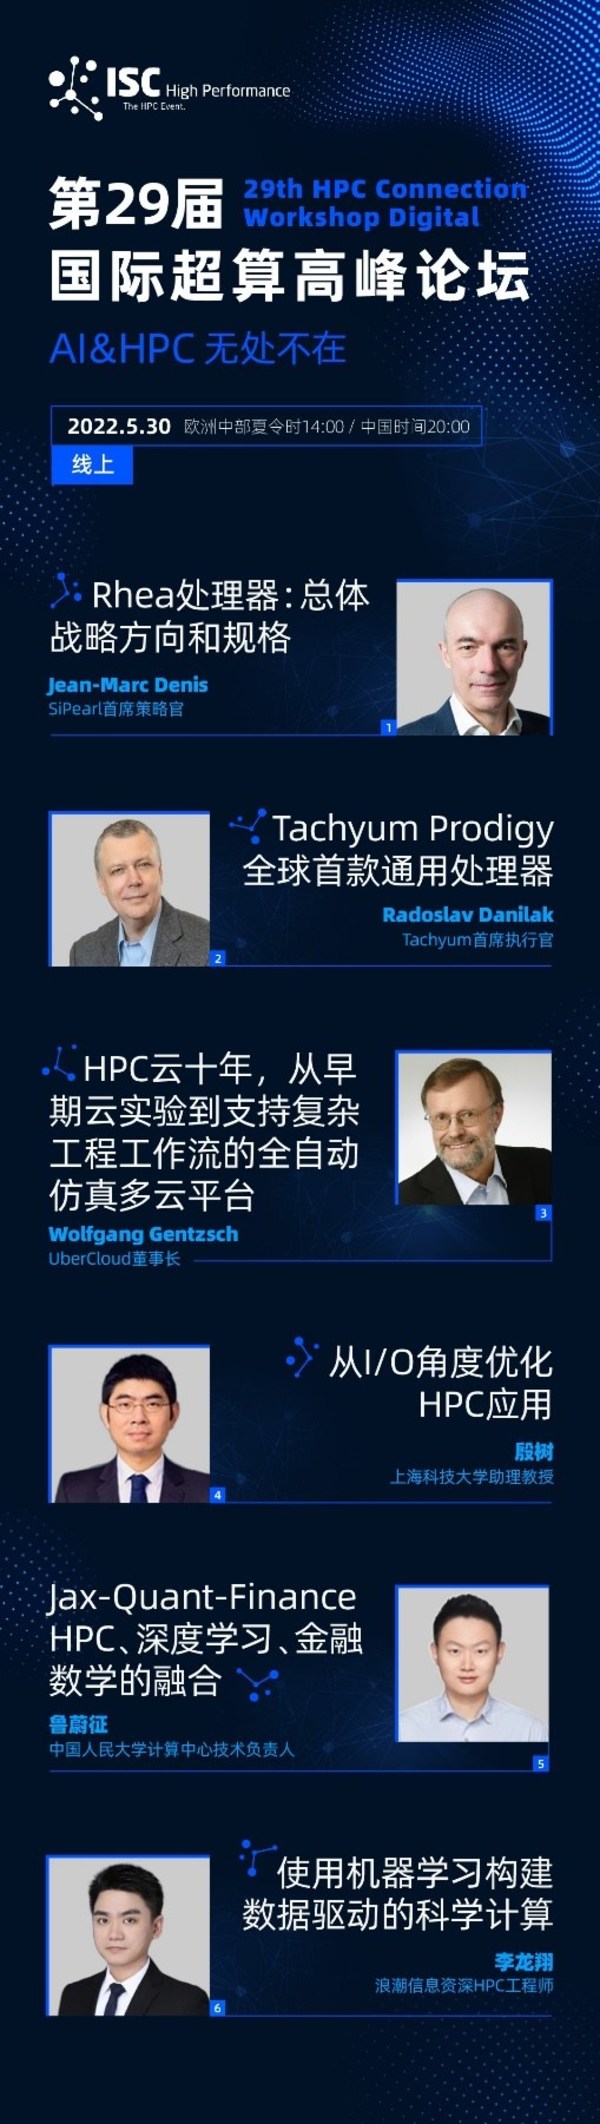 国际超算高峰论坛将在ISC22举行，探讨AI和HPC计算融合